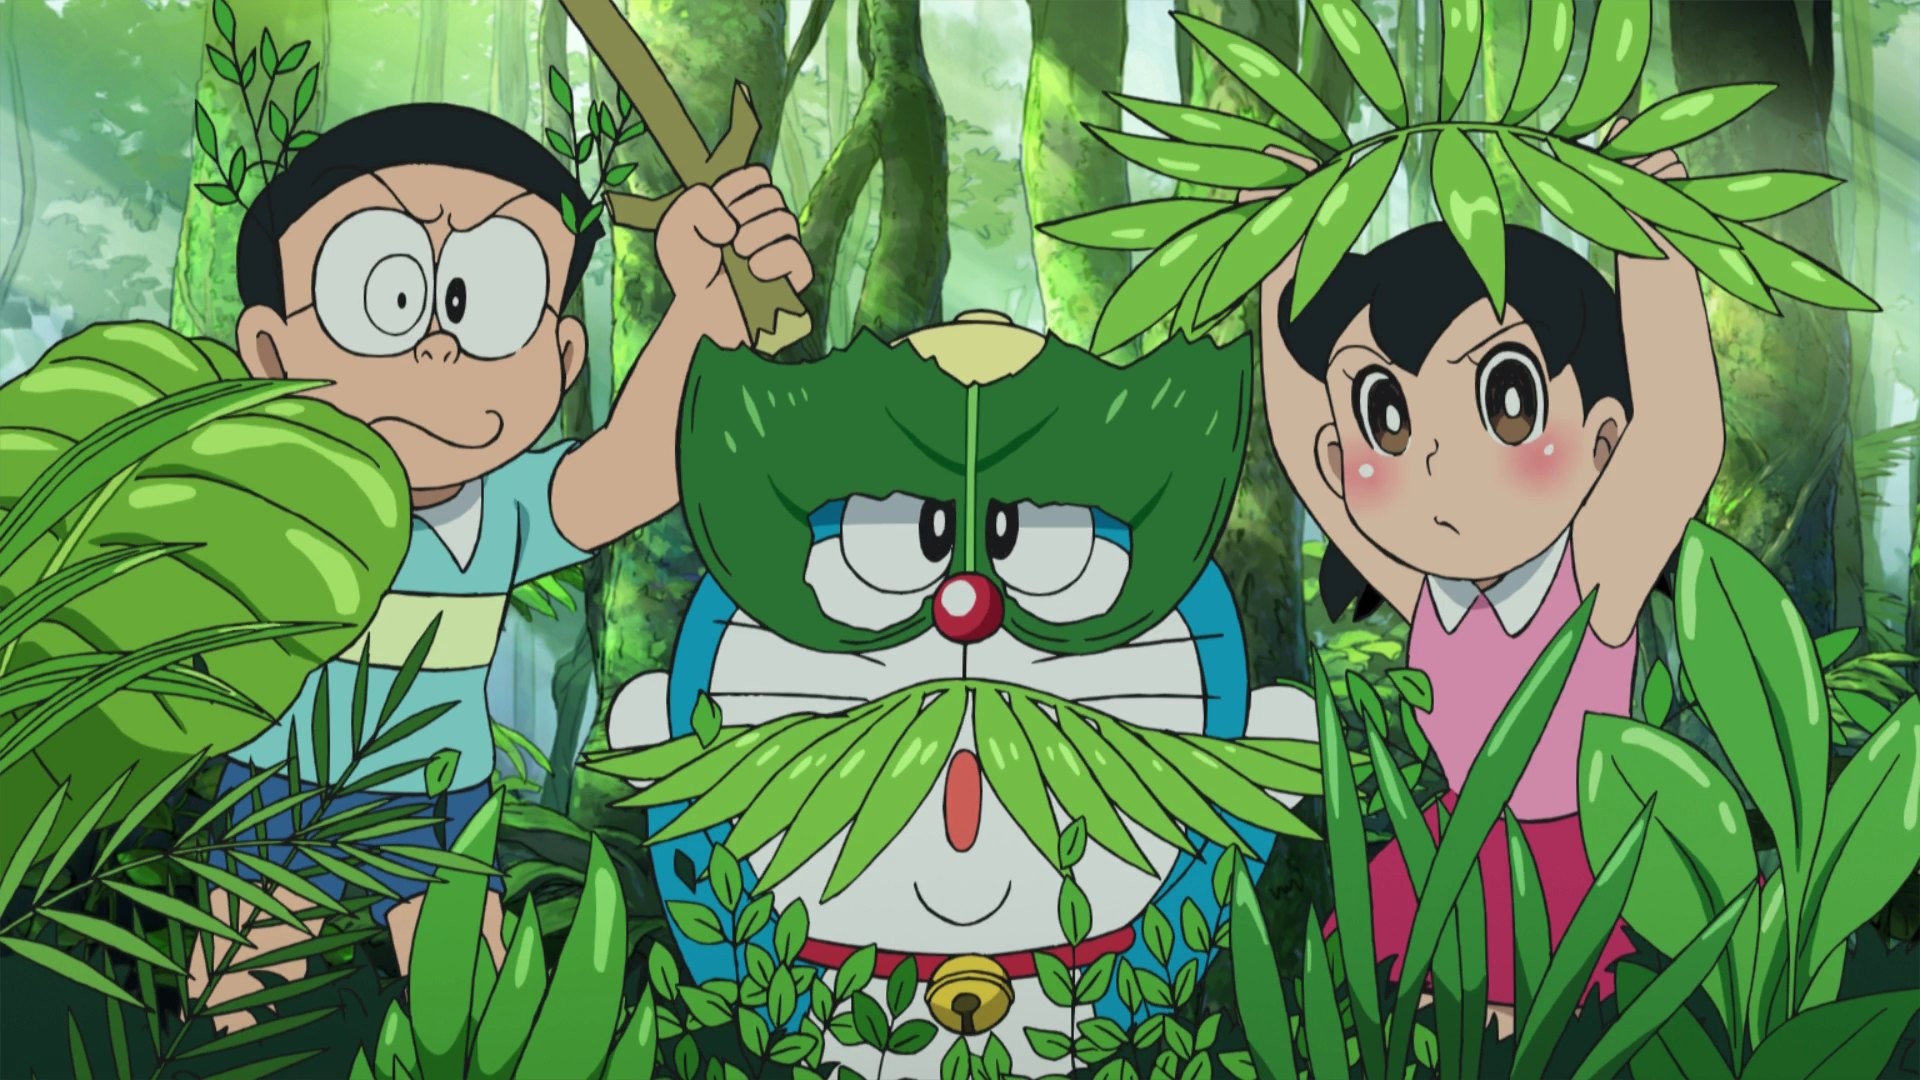 Doraemon và Bạn bè là một sự kết hợp hoàn hảo về anh hùng và tình bạn. Hình nền này sẽ làm cho bạn cảm thấy thoải mái và tự do trong không gian làm việc của mình. Nhanh tay tải về và cùng thưởng thức hình ảnh tuyệt vời này nào!